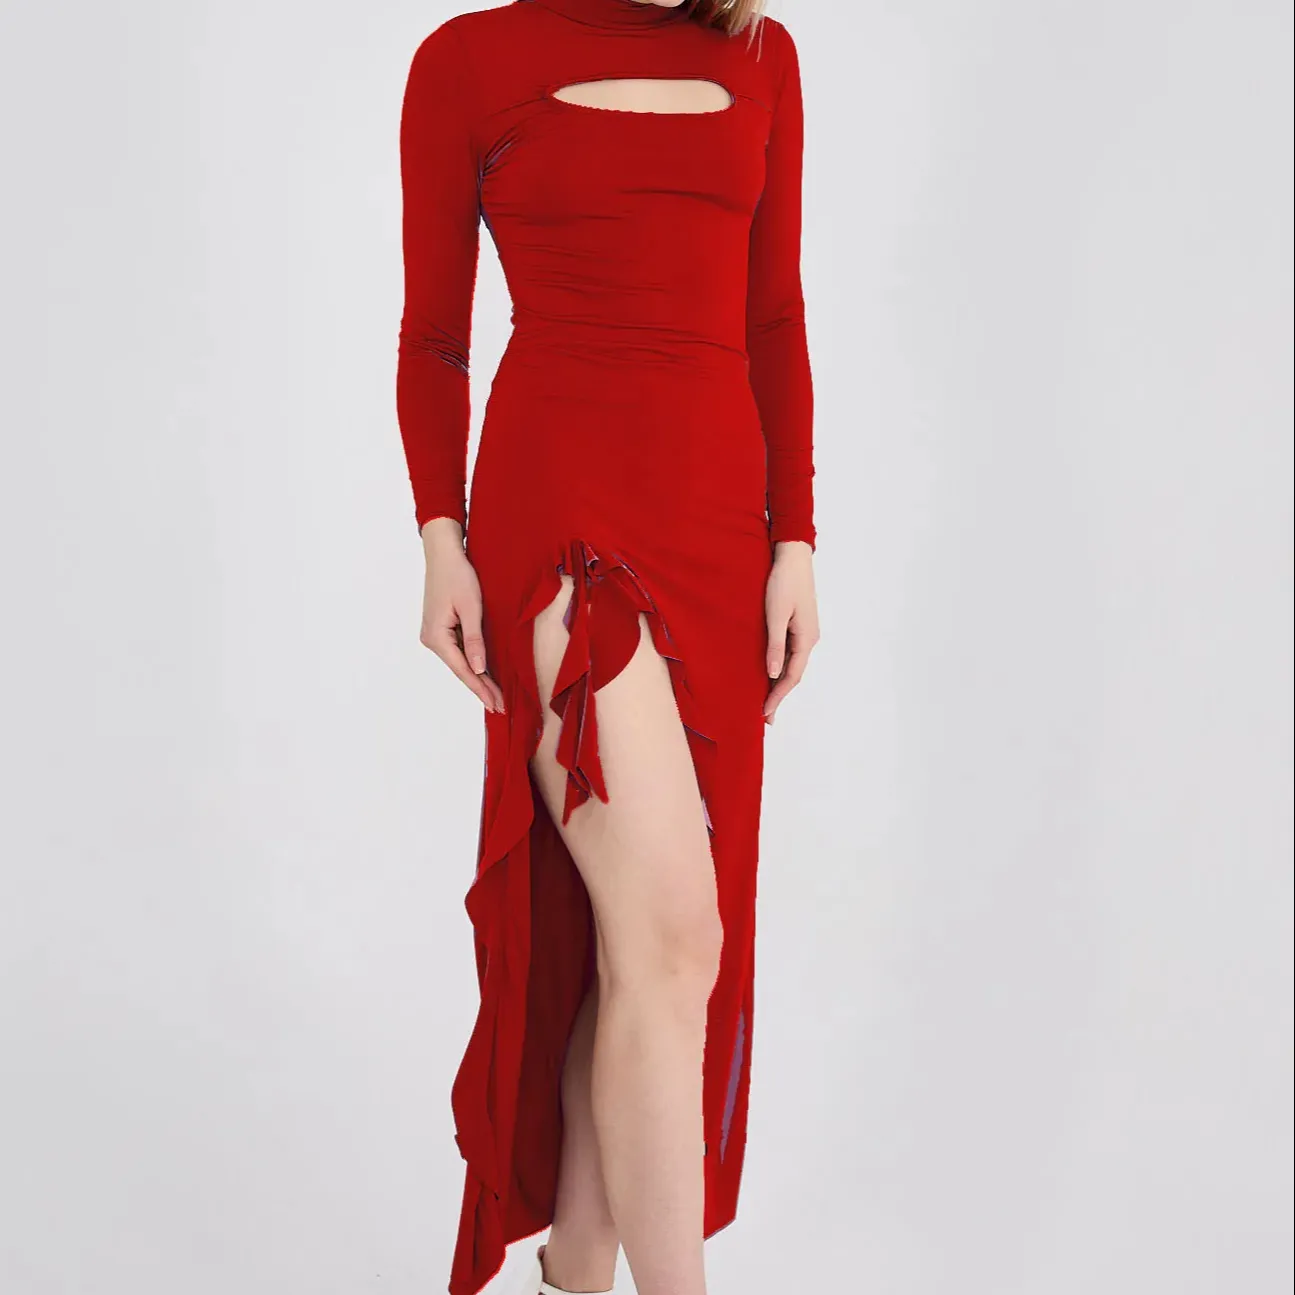 दोनों तरफ की स्लिट वाली लाल लंबी आस्तीन वाली सैंडी ड्रेस, आकार के अनुरूप लाल रंग